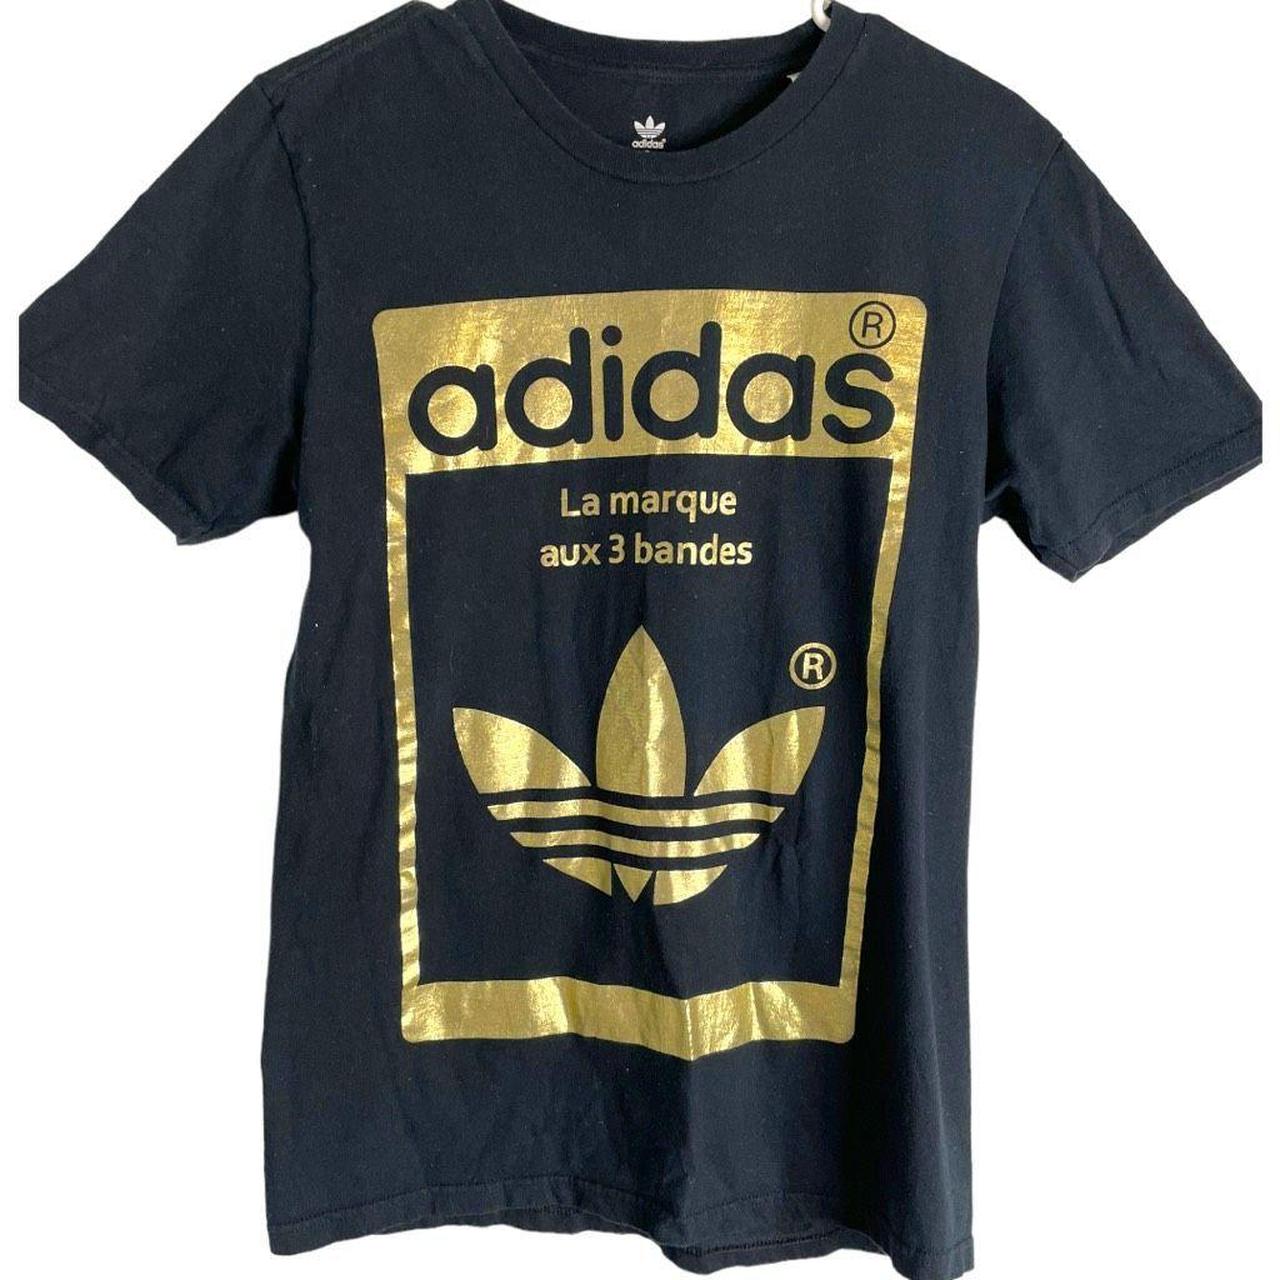 lenen een experiment doen prioriteit Adidas Men's Black and Gold T-shirt | Depop